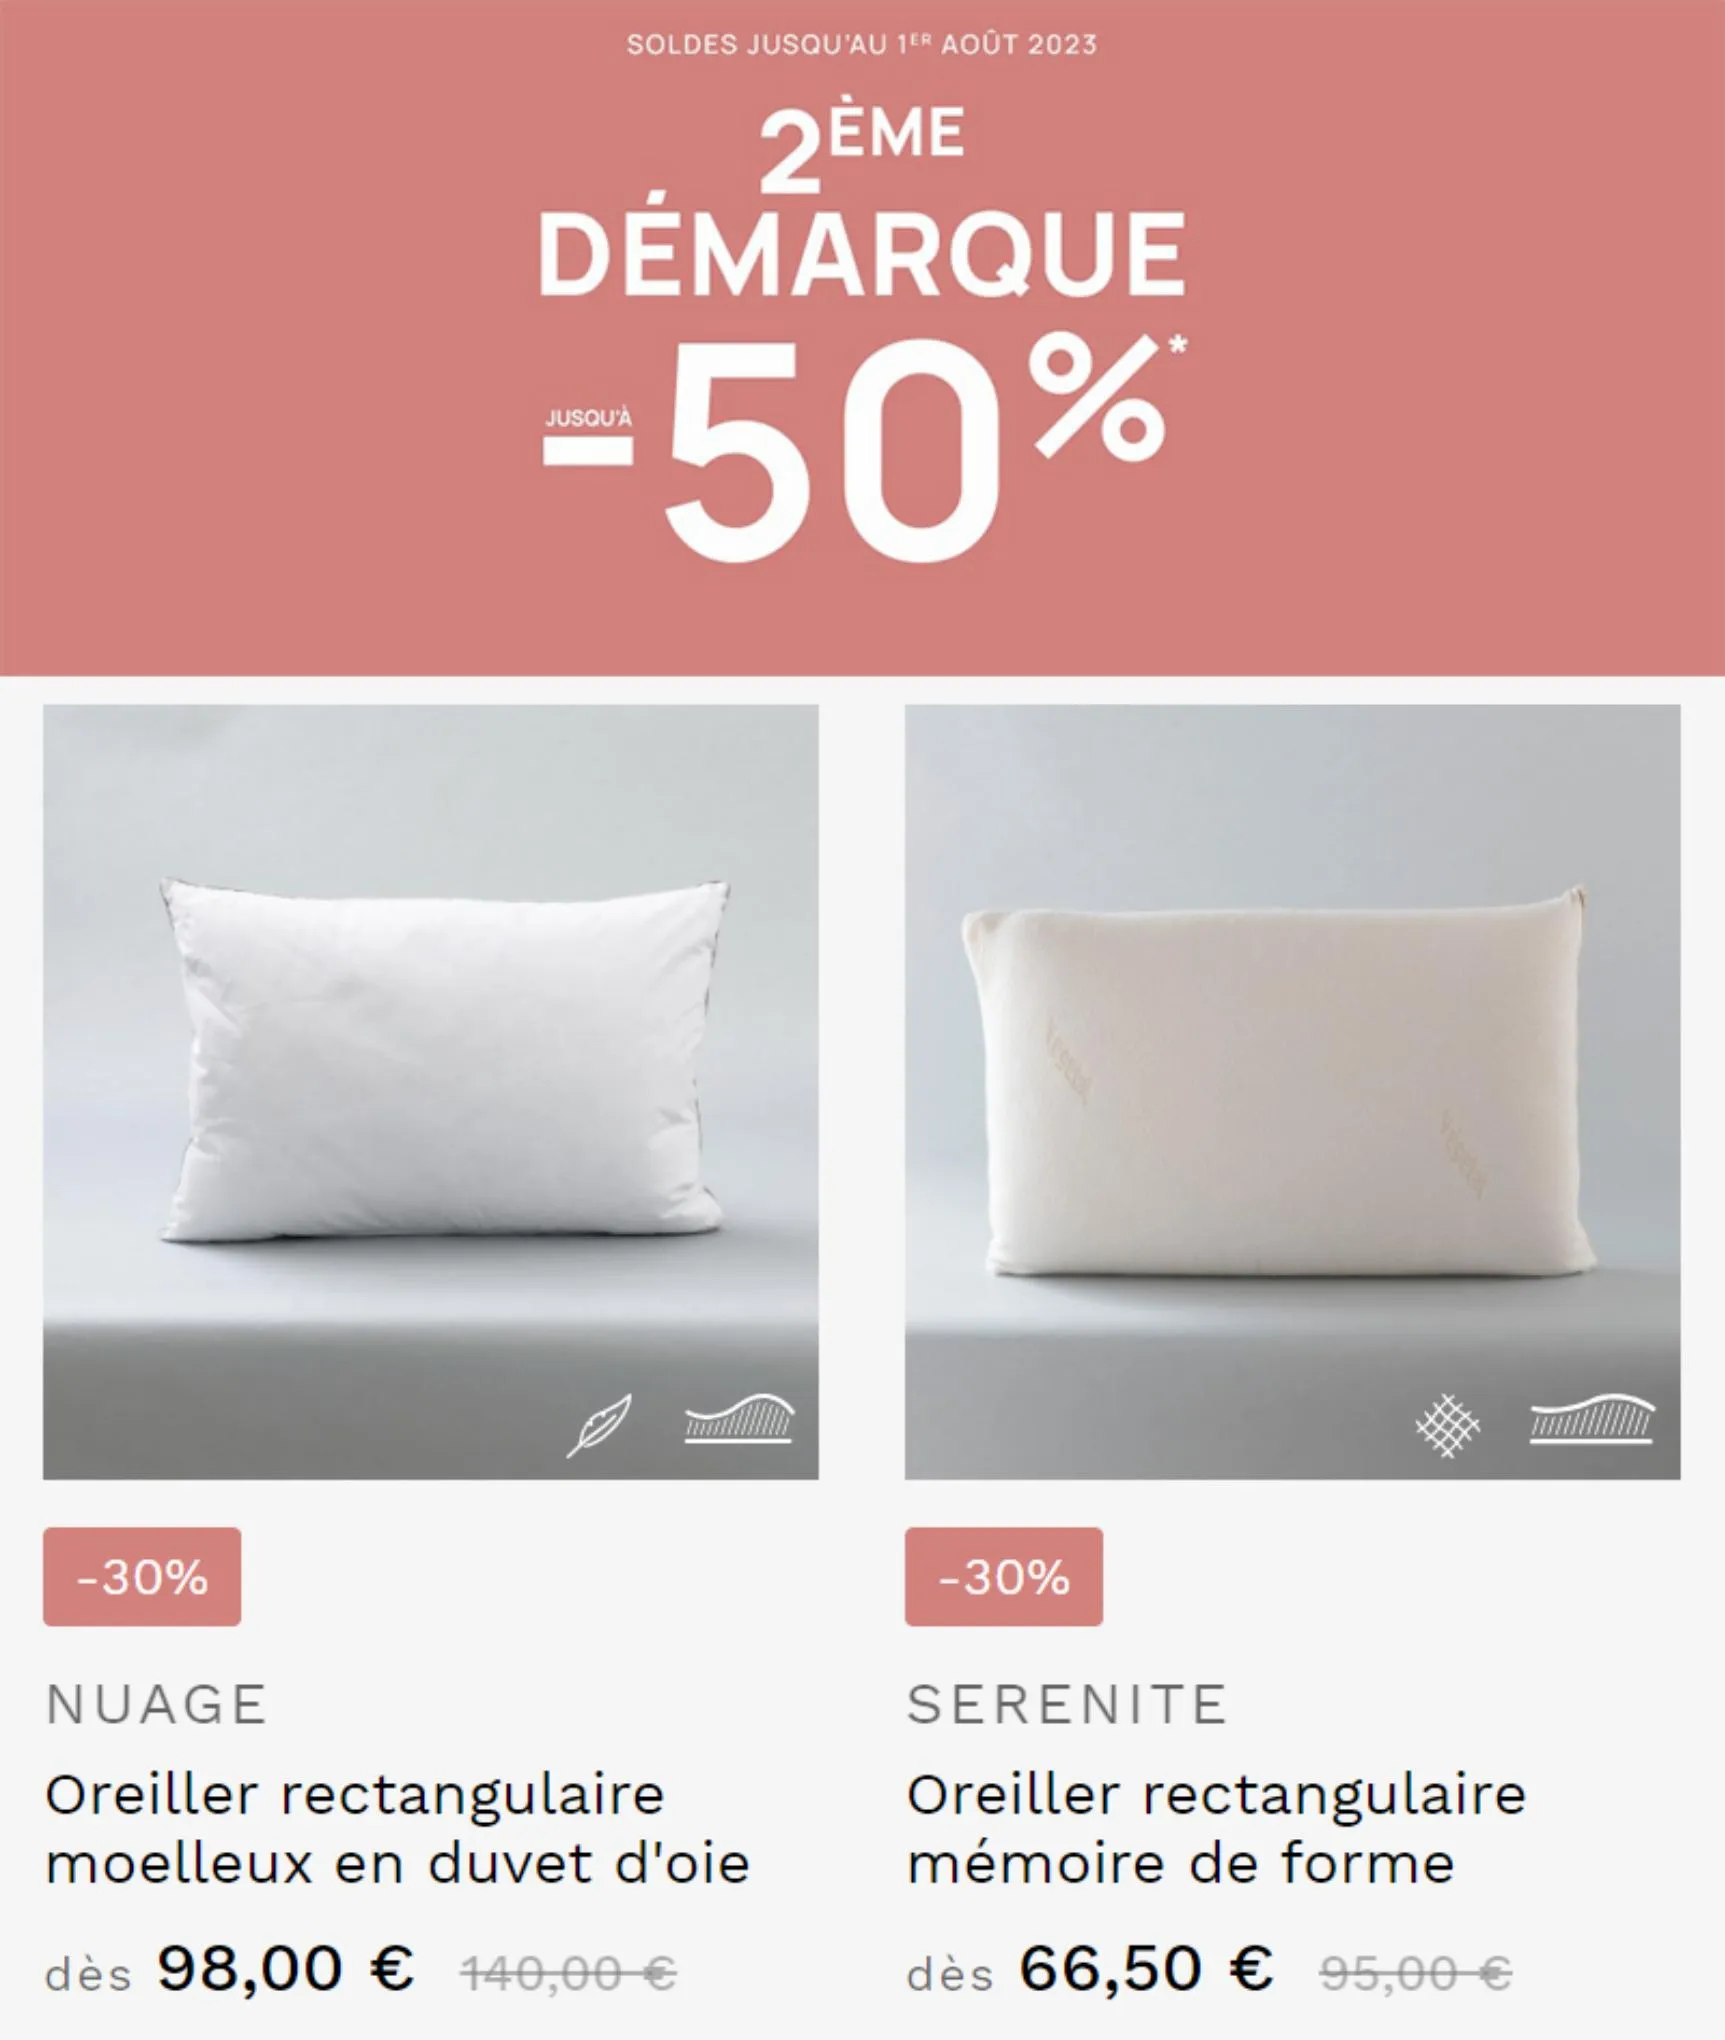 Catalogue Les Soldes Carré Blanc Jusqu'à -50%!, page 00004